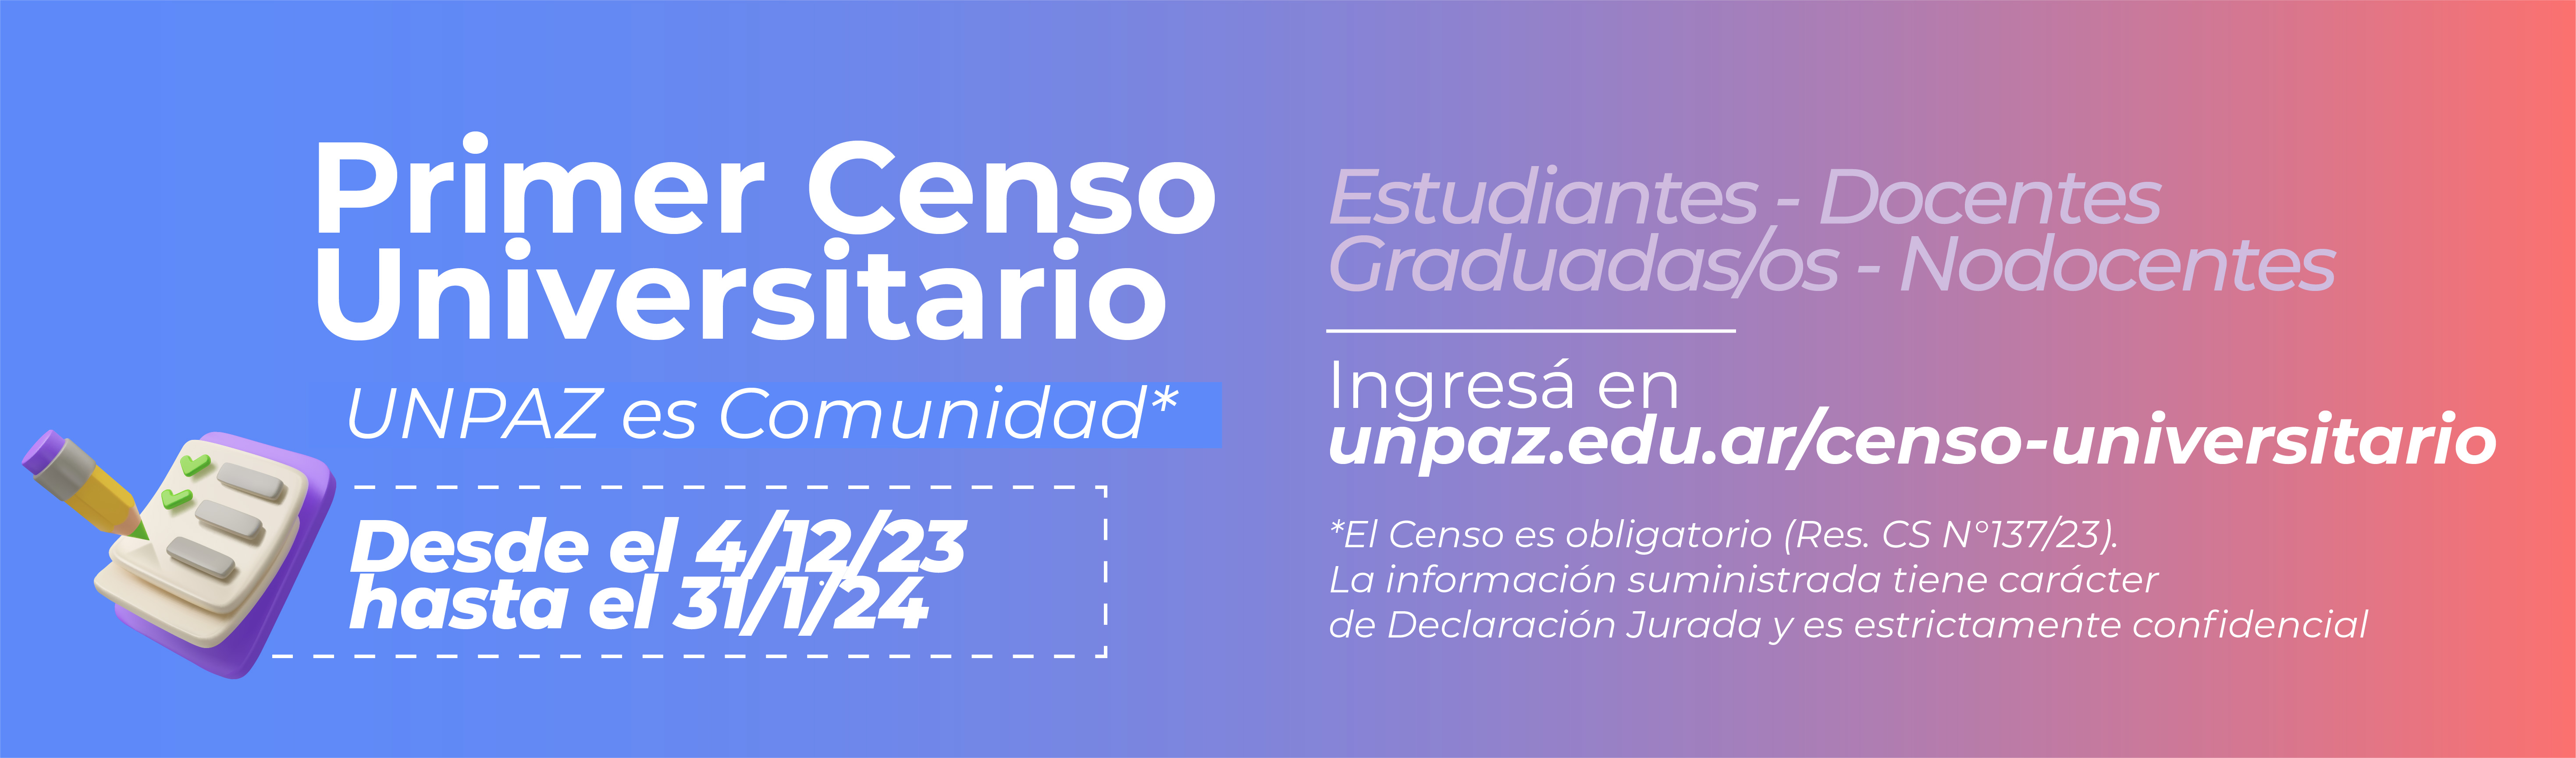 Primer Censo Universitario “UNPAZ es comunidad”